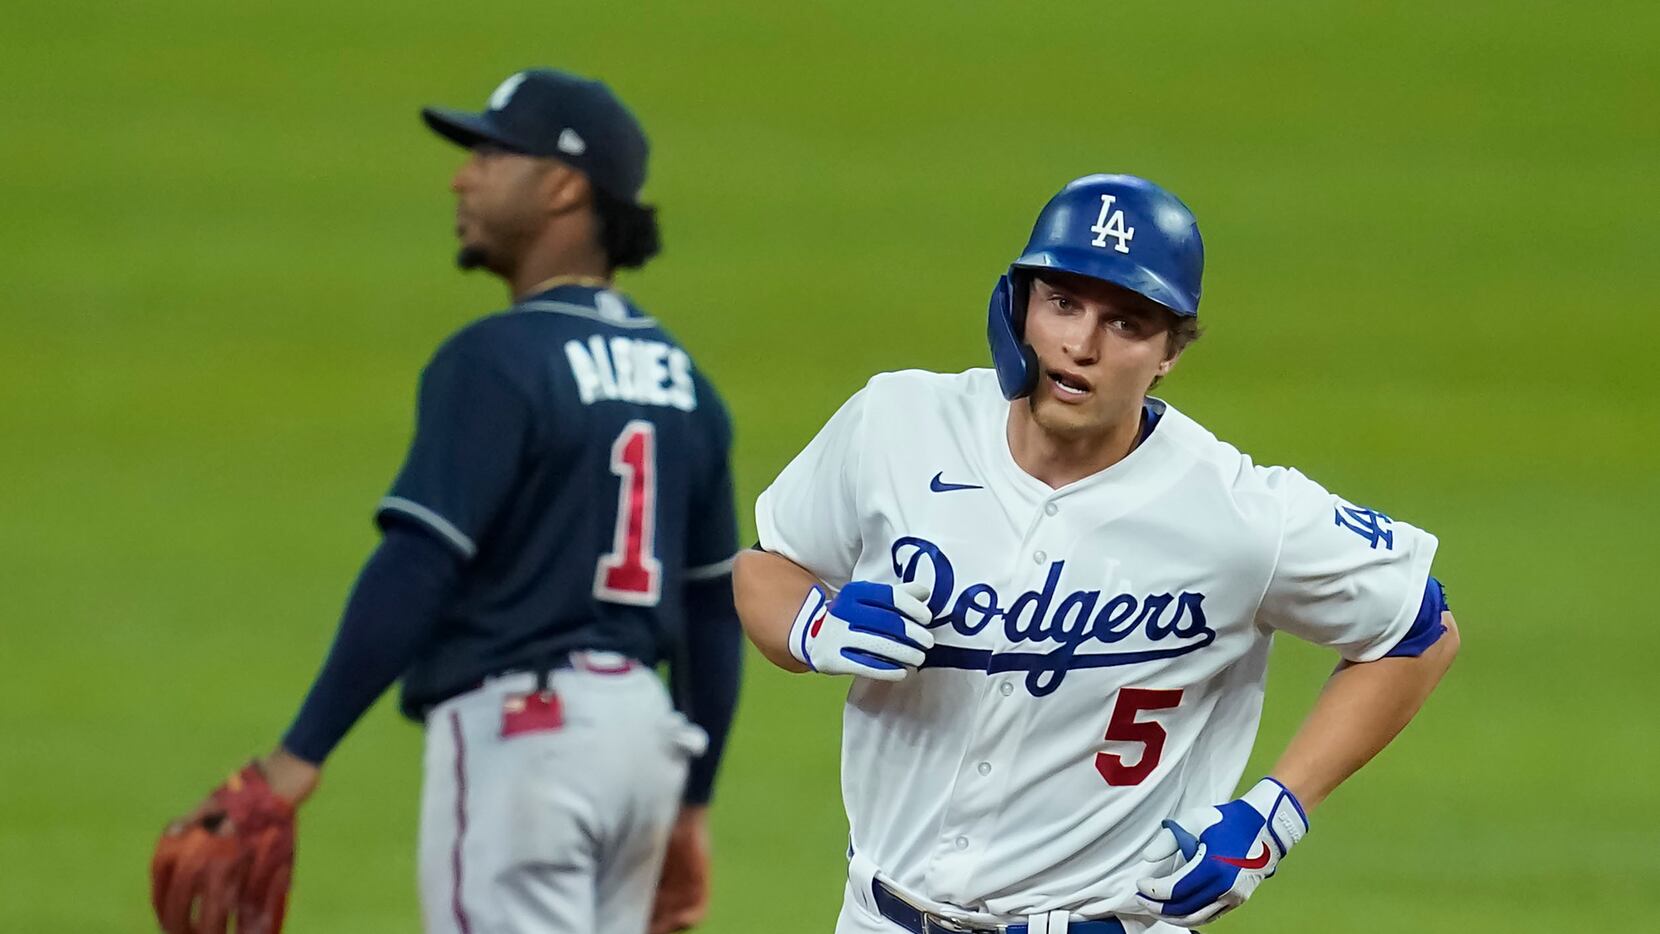 Baseball-Dodgers shortstop Seager named World Series MVP